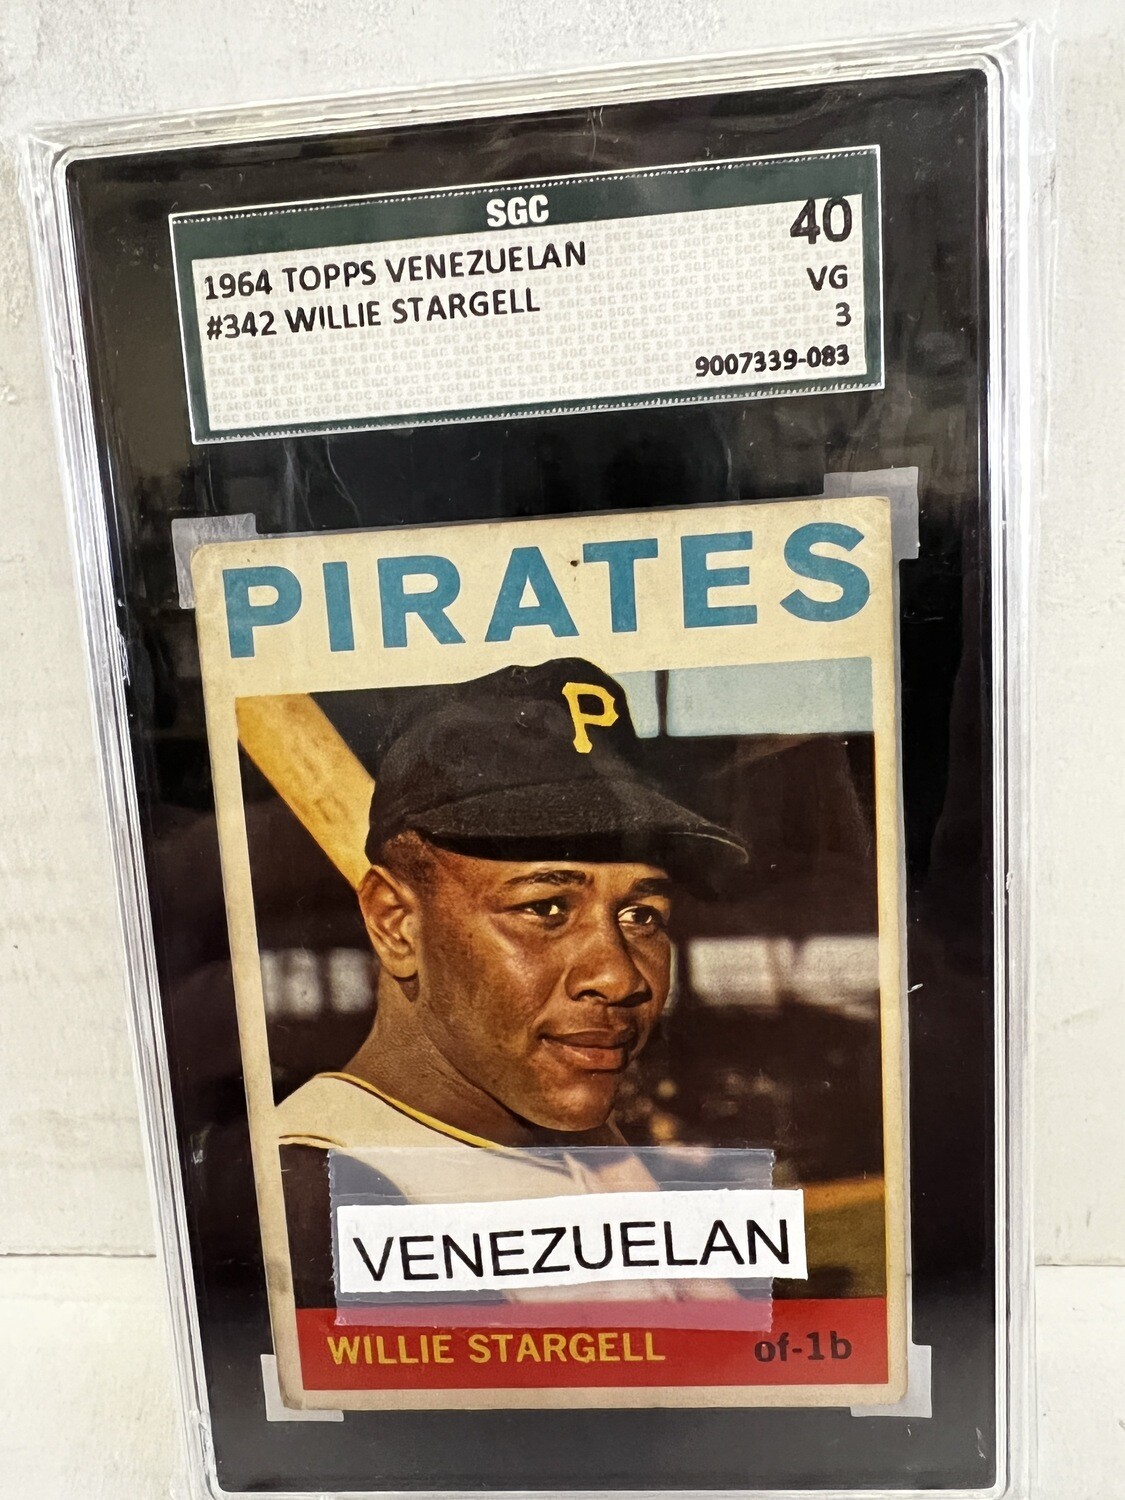 1964 Topps Venezuelan #342 Willie Stargell SGC 3